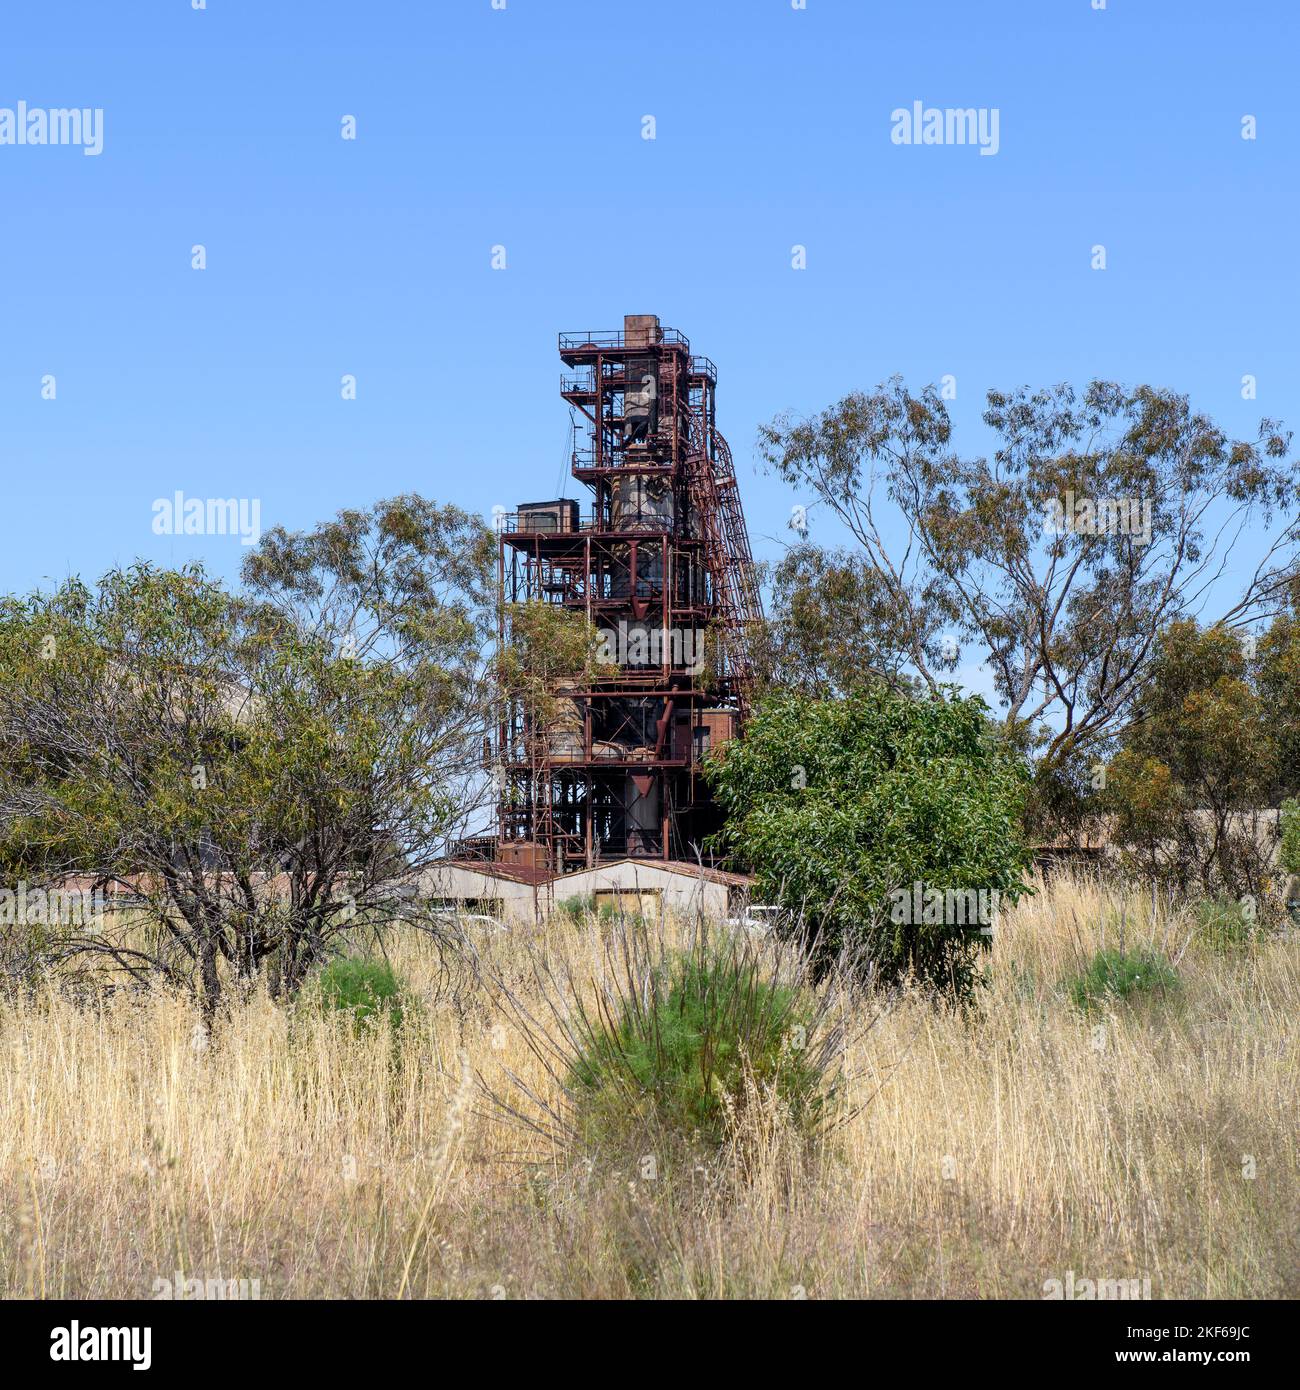 Retorte Lambiotte désaffectée (Retorte), sur le site de l'industrie du fer et de l'acier au charbon (CISI), aujourd'hui défunte. Wundowie, Australie occidentale Banque D'Images